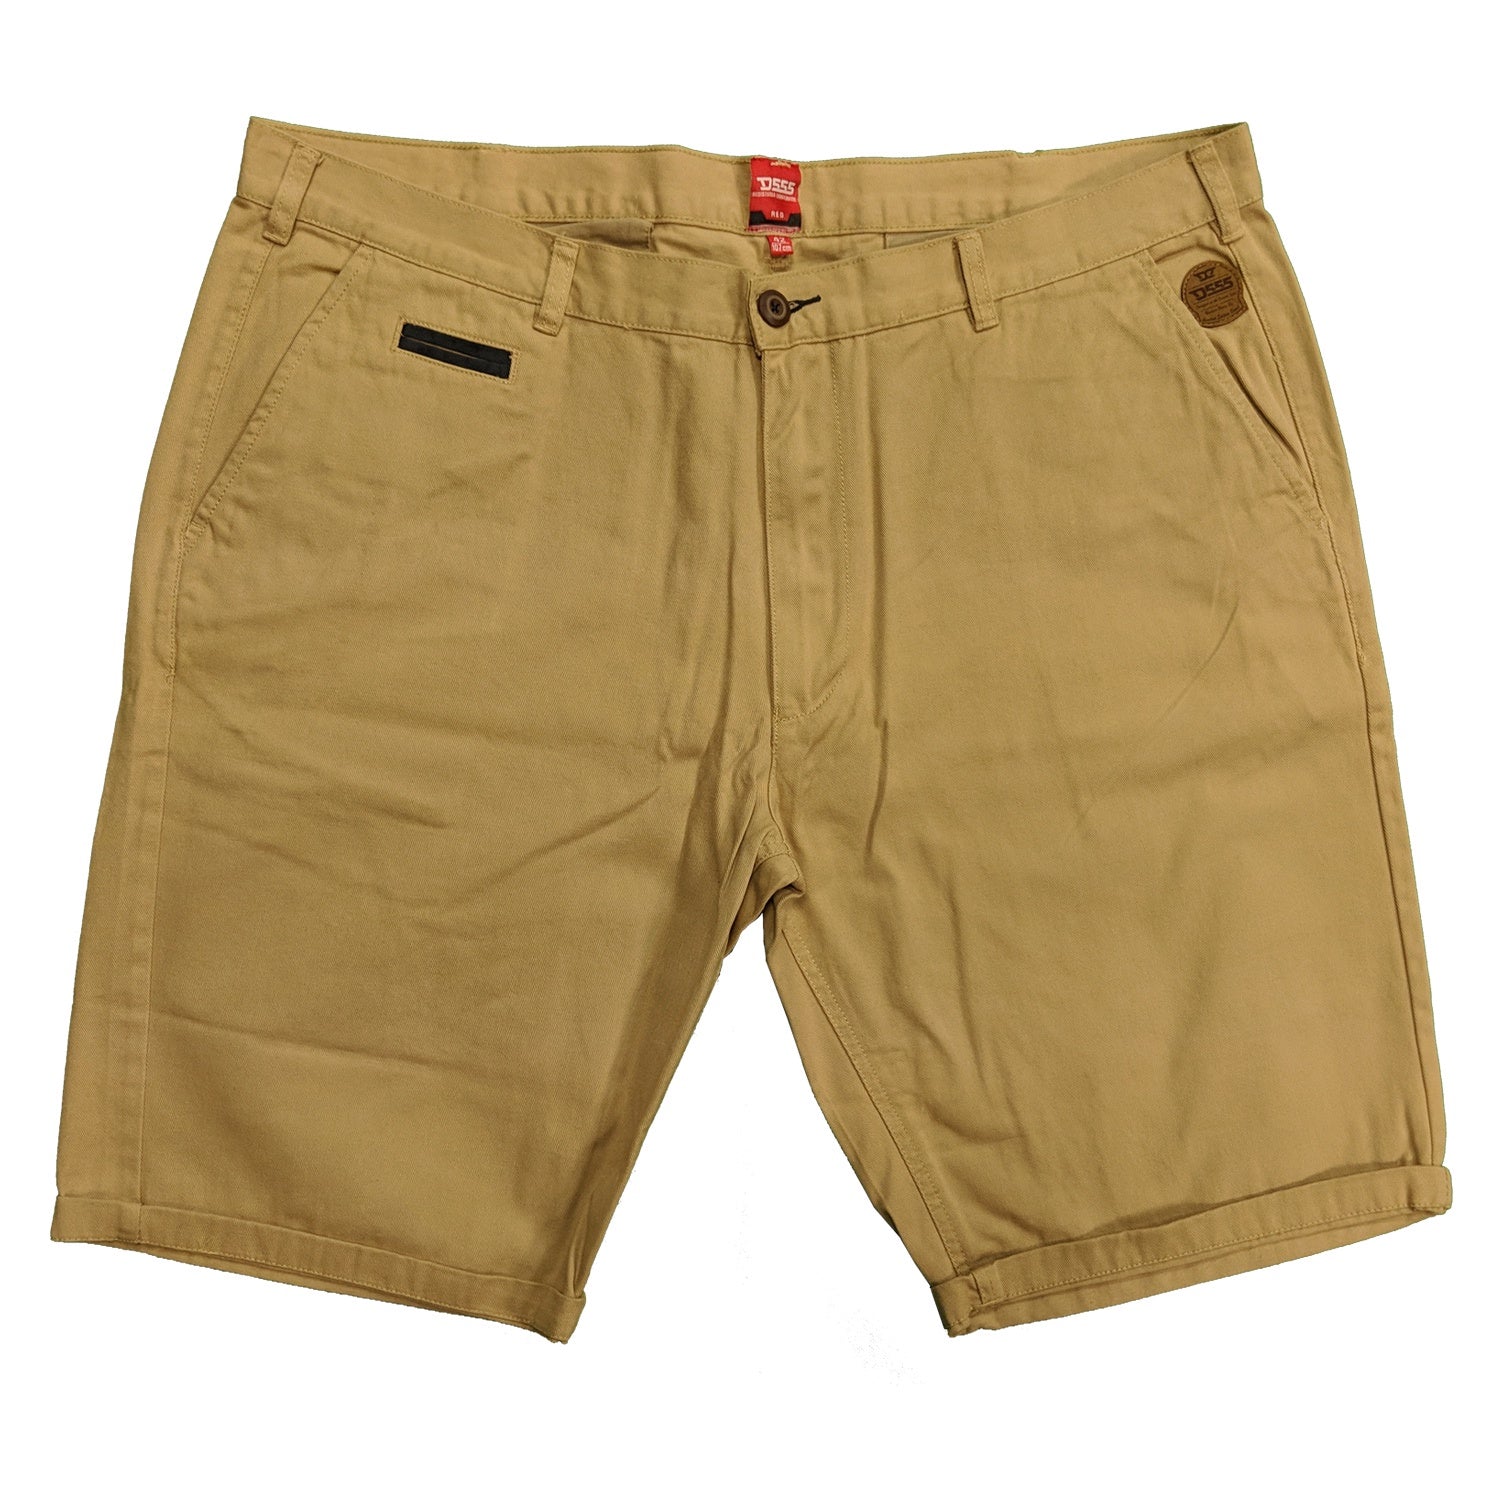 D555 Chino Shorts - KS20693 - Josh - Tan 1